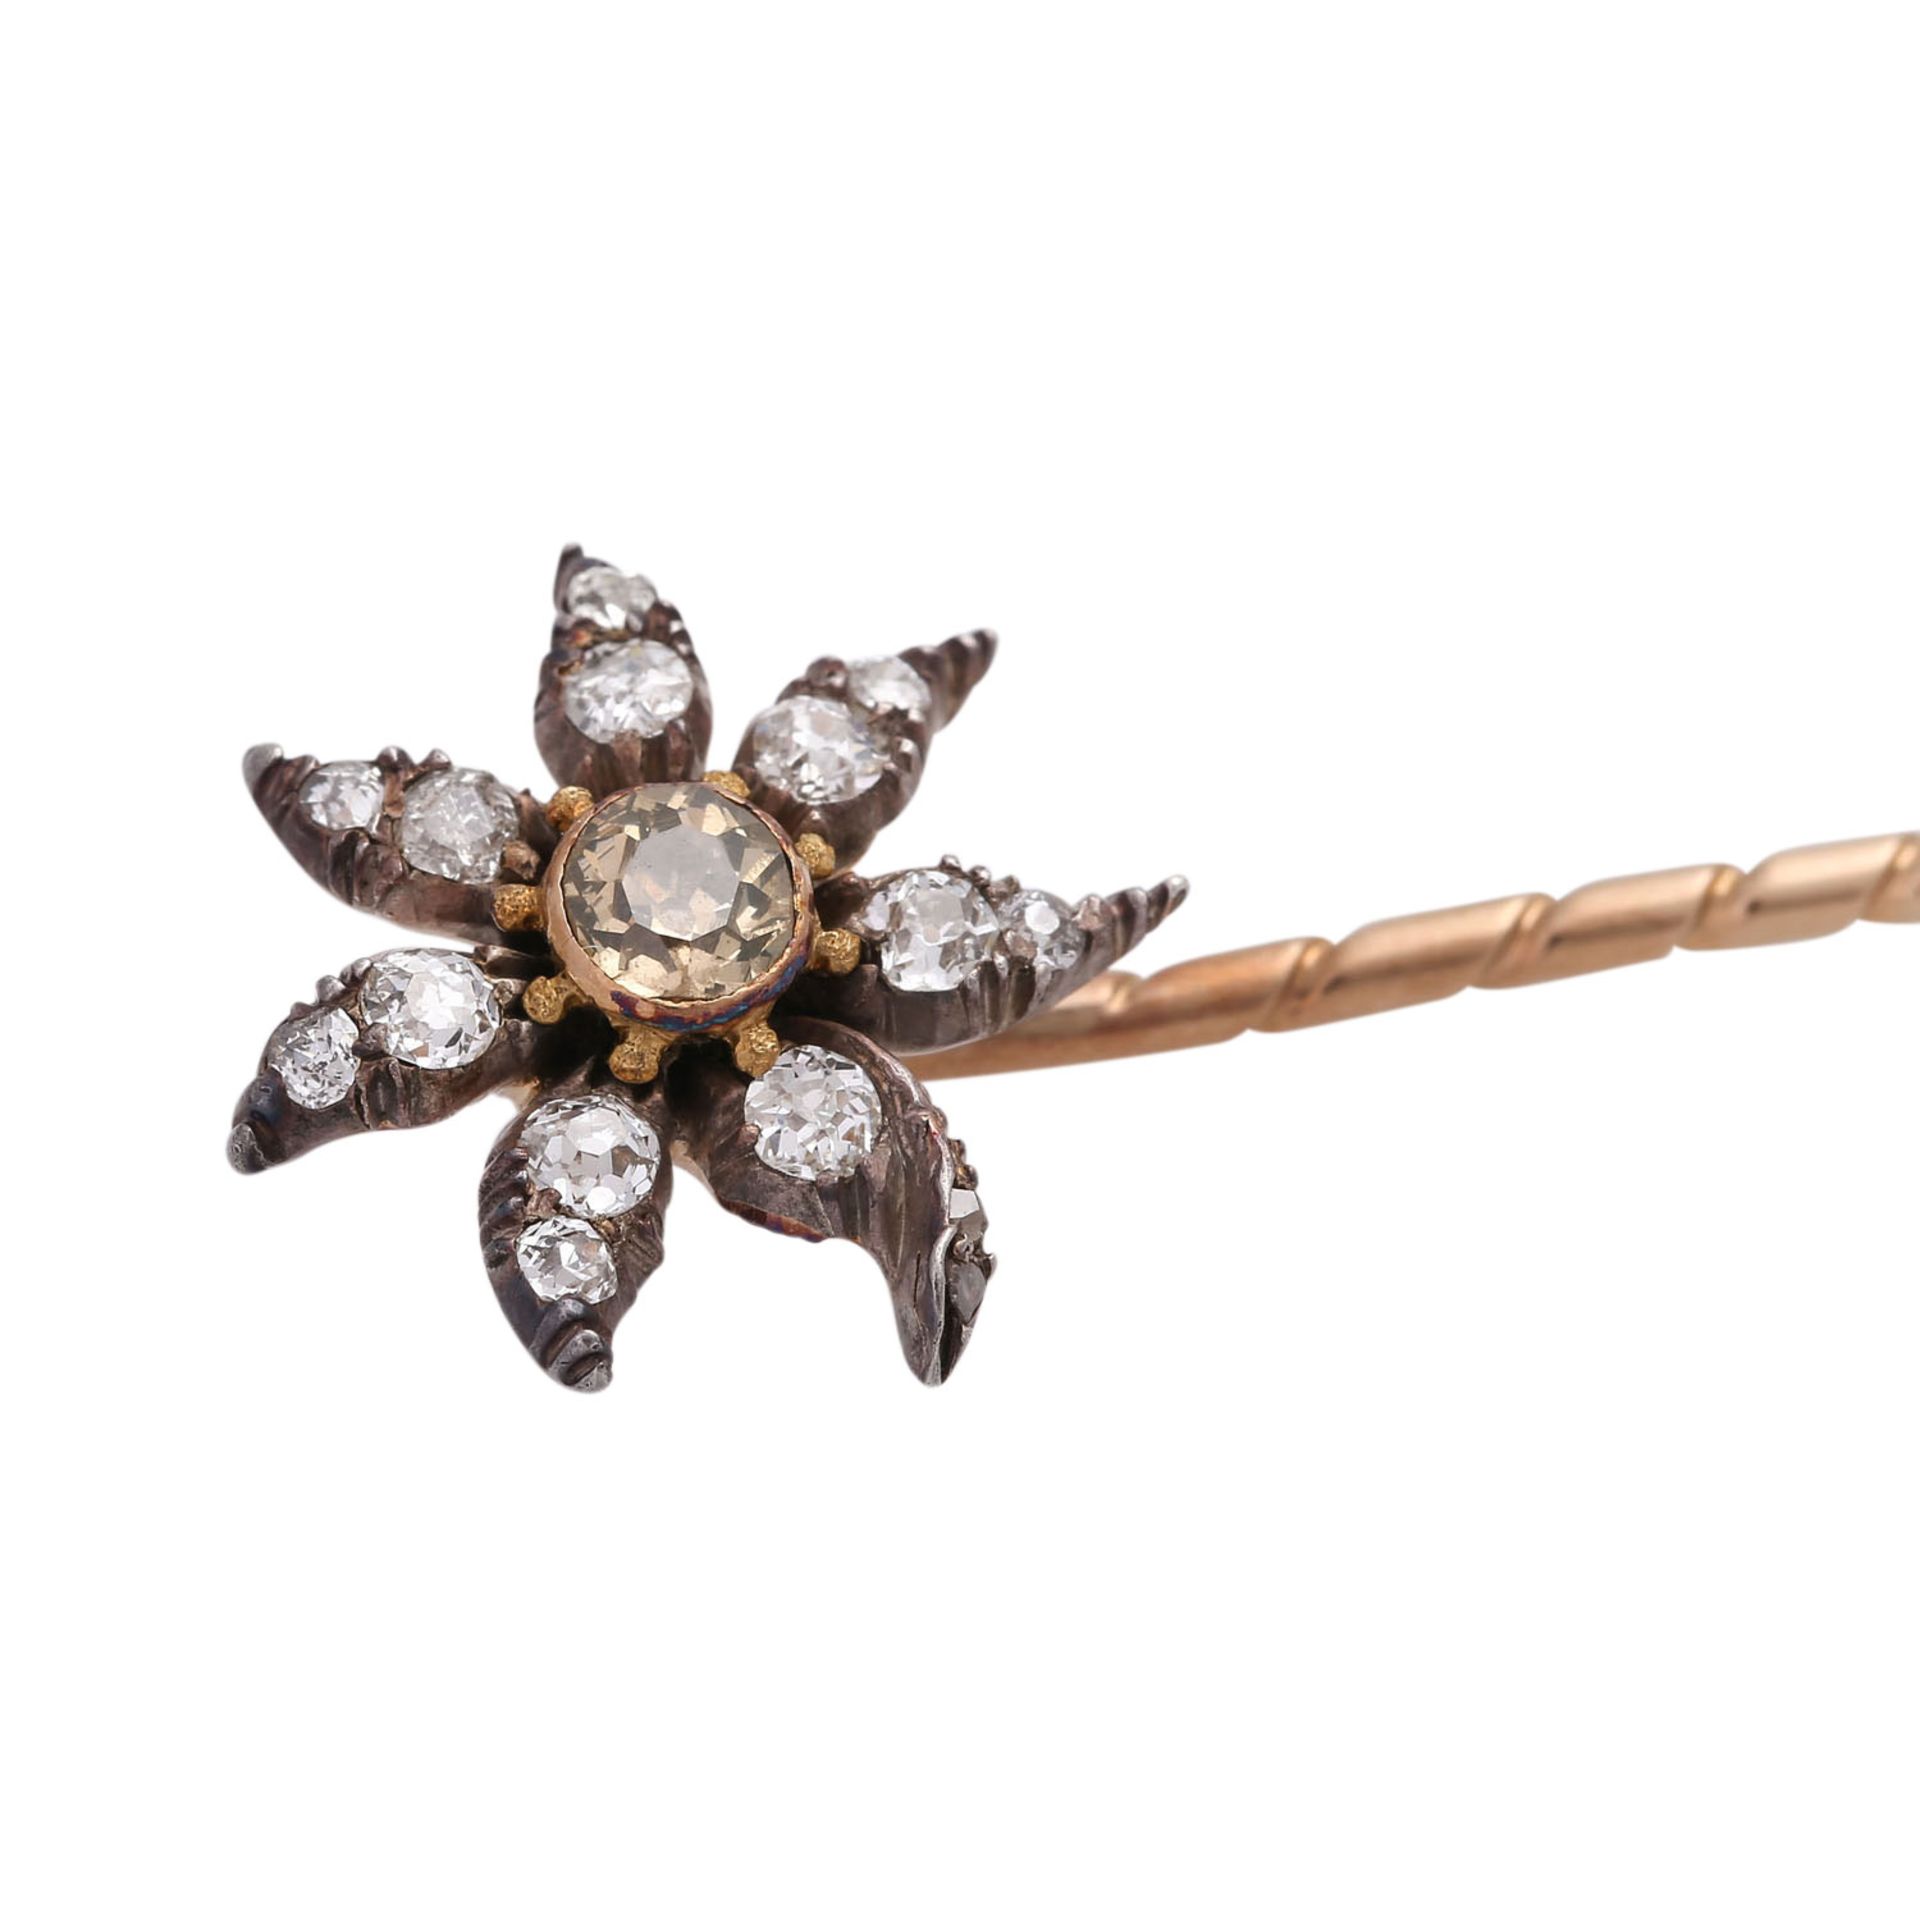 Nadel "Blütenstern" bes. mit Altschliffdiamanten, zus. ca. 0,4 ct,Mittelstein gelb-bräunlich, RSG - Bild 4 aus 4